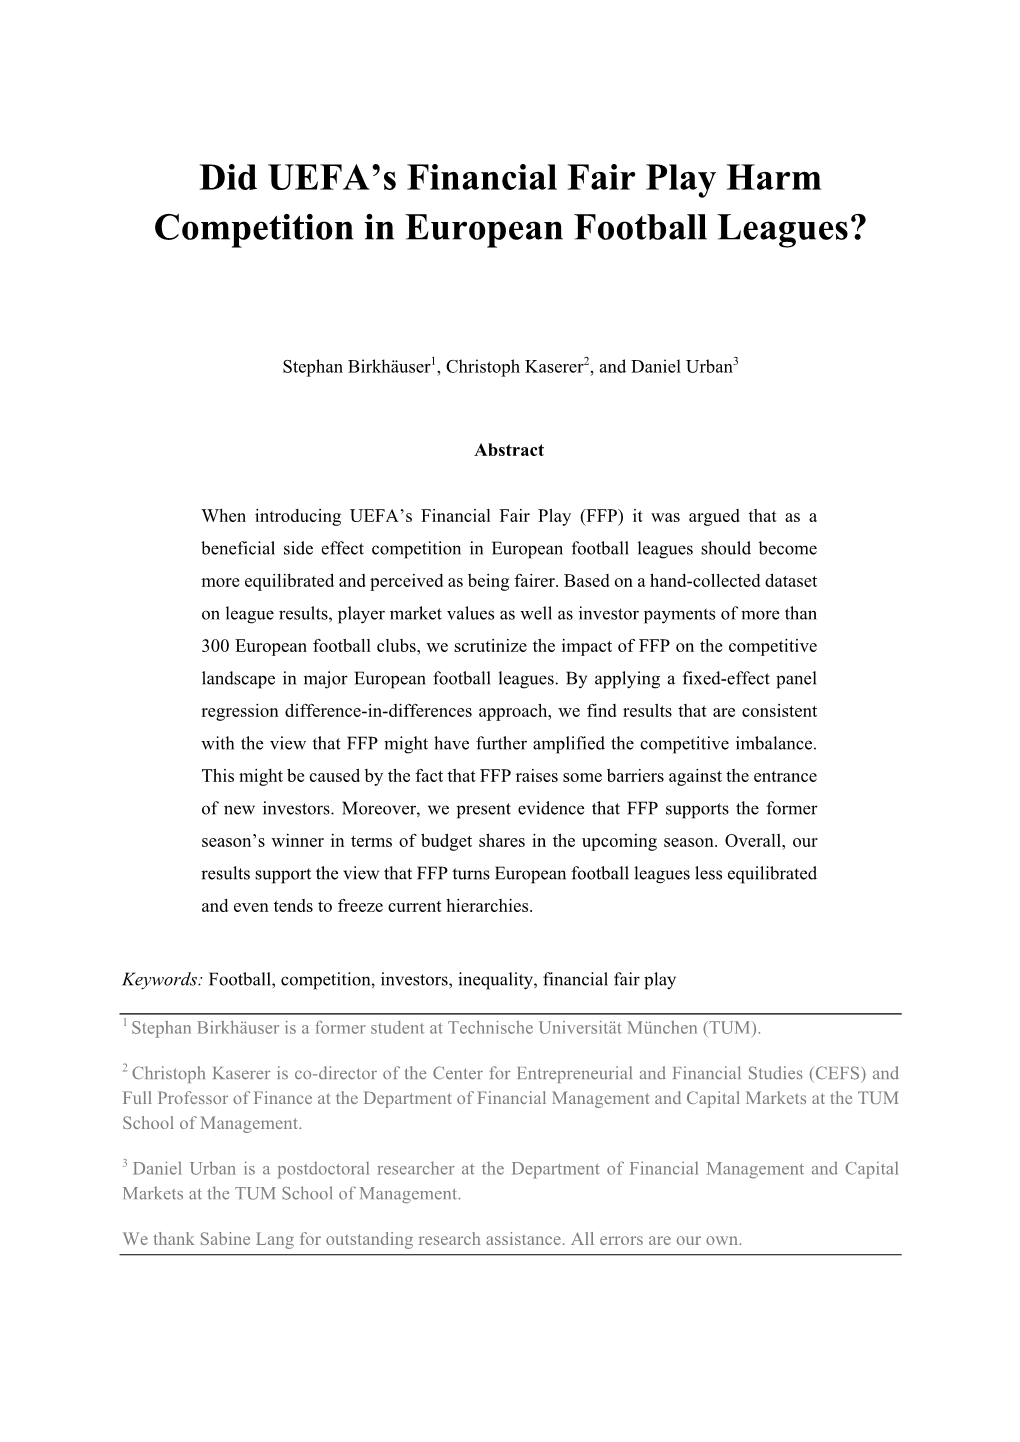 Did UEFA's Financial Fair Play Harm Competition in European Football